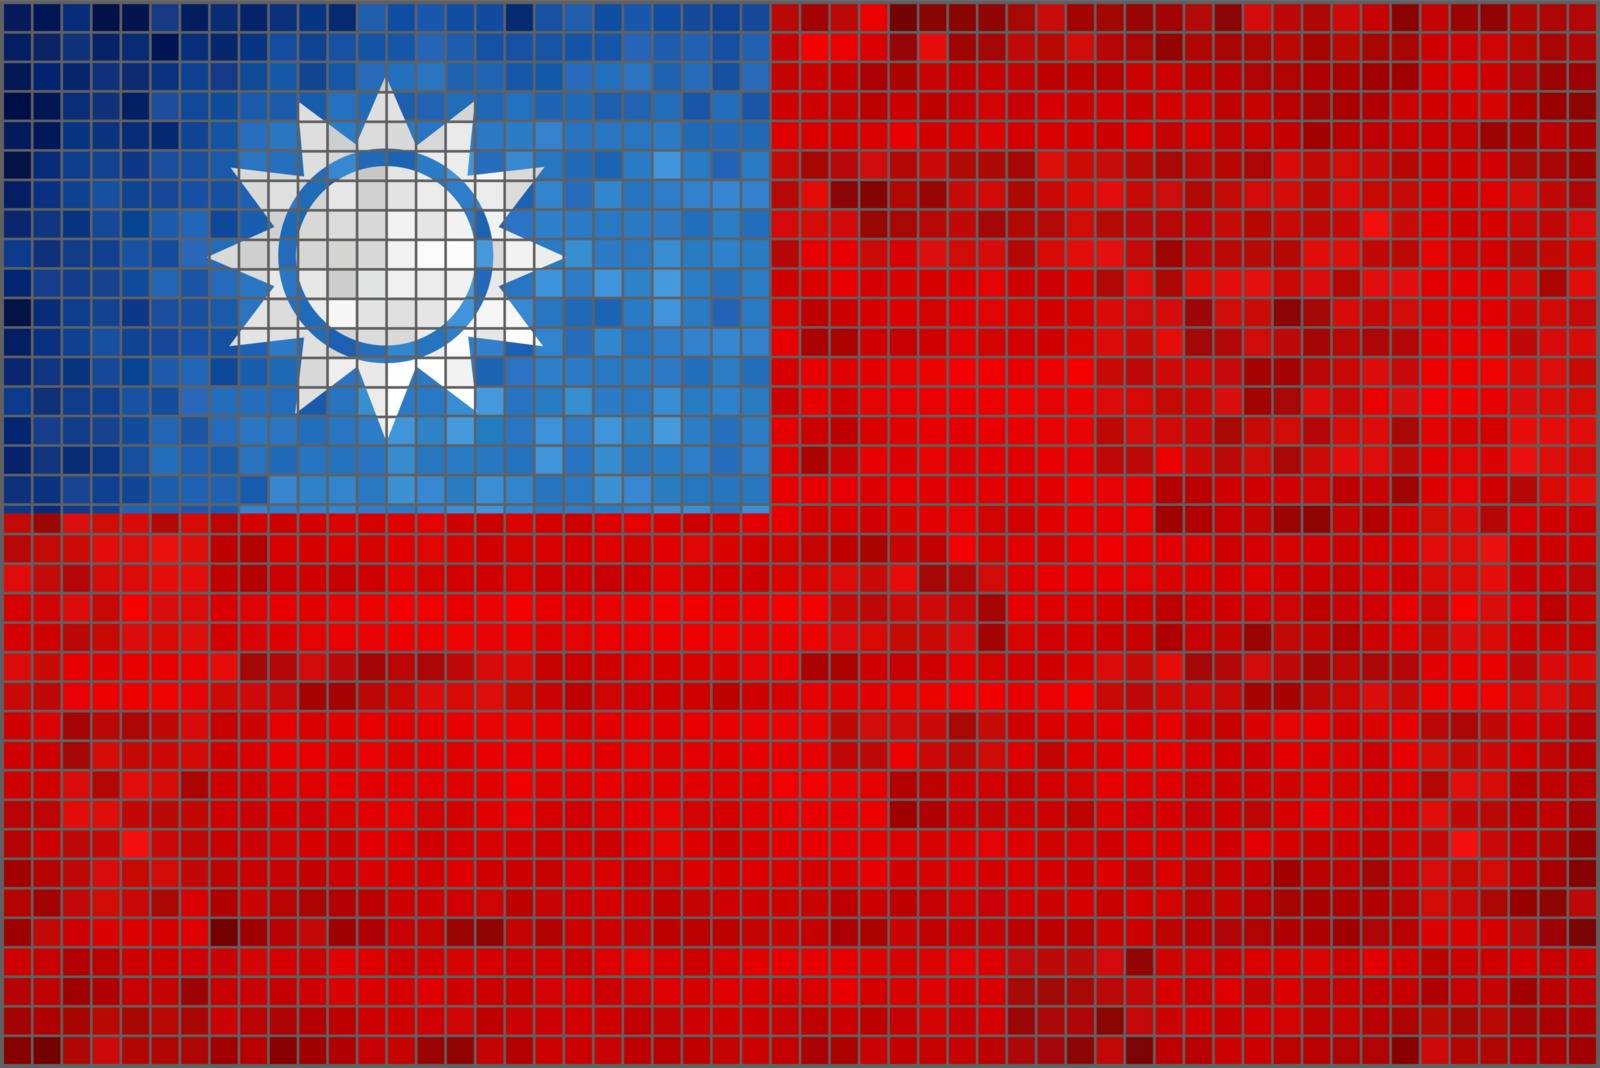 Flag of Taiwan - Illustration, 
Abstract Mosaic Taiwan Flag, 
Grunge mosaic Flag of Taiwan, 
Abstract grunge mosaic vector